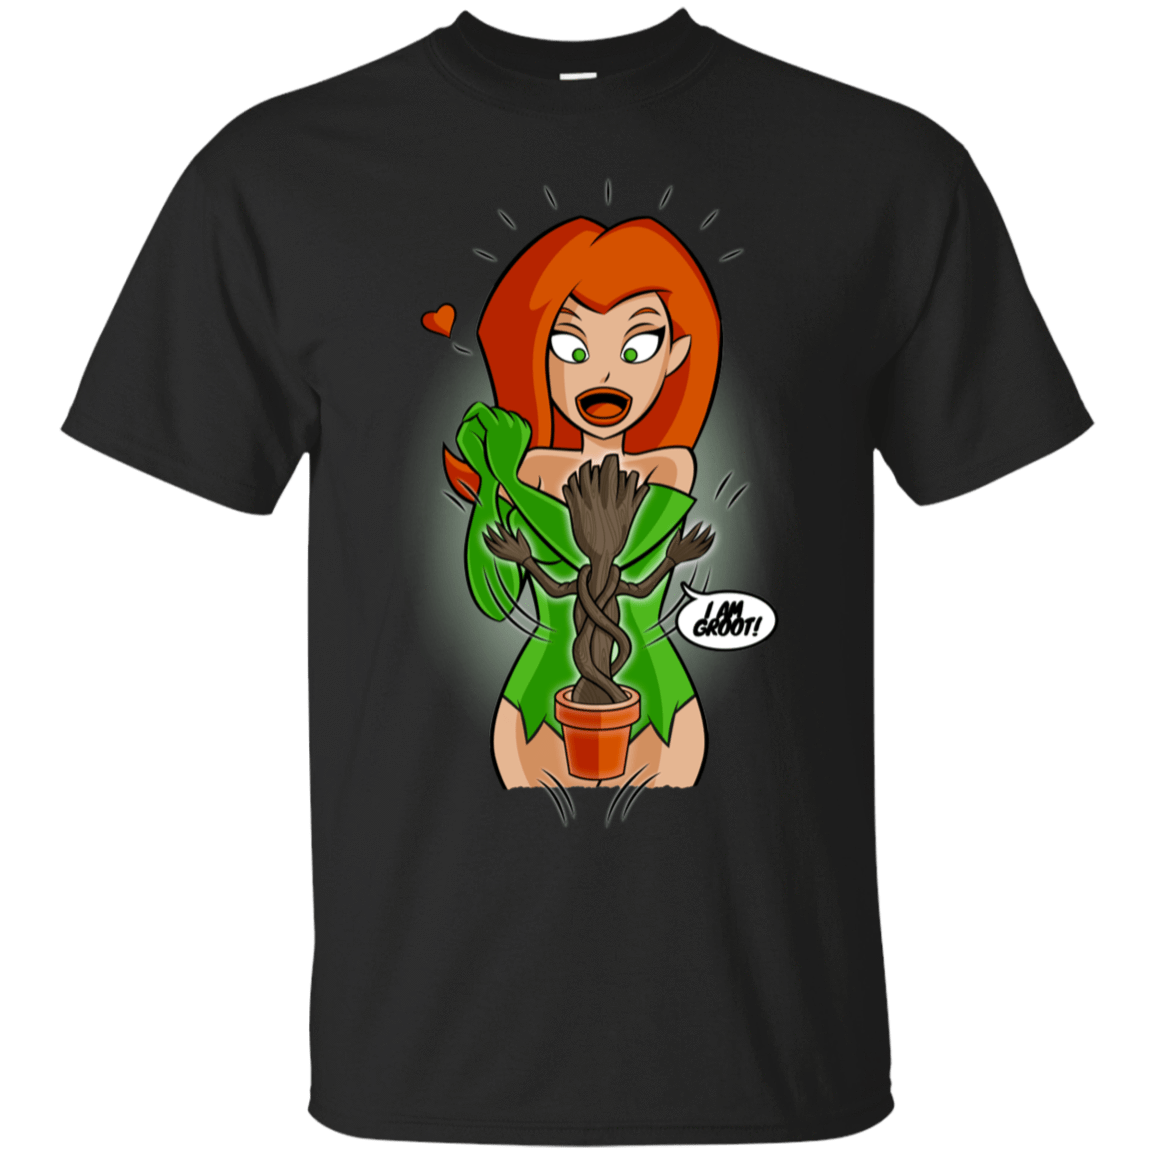 T-Shirts Black / S Ivy&Groot T-Shirt